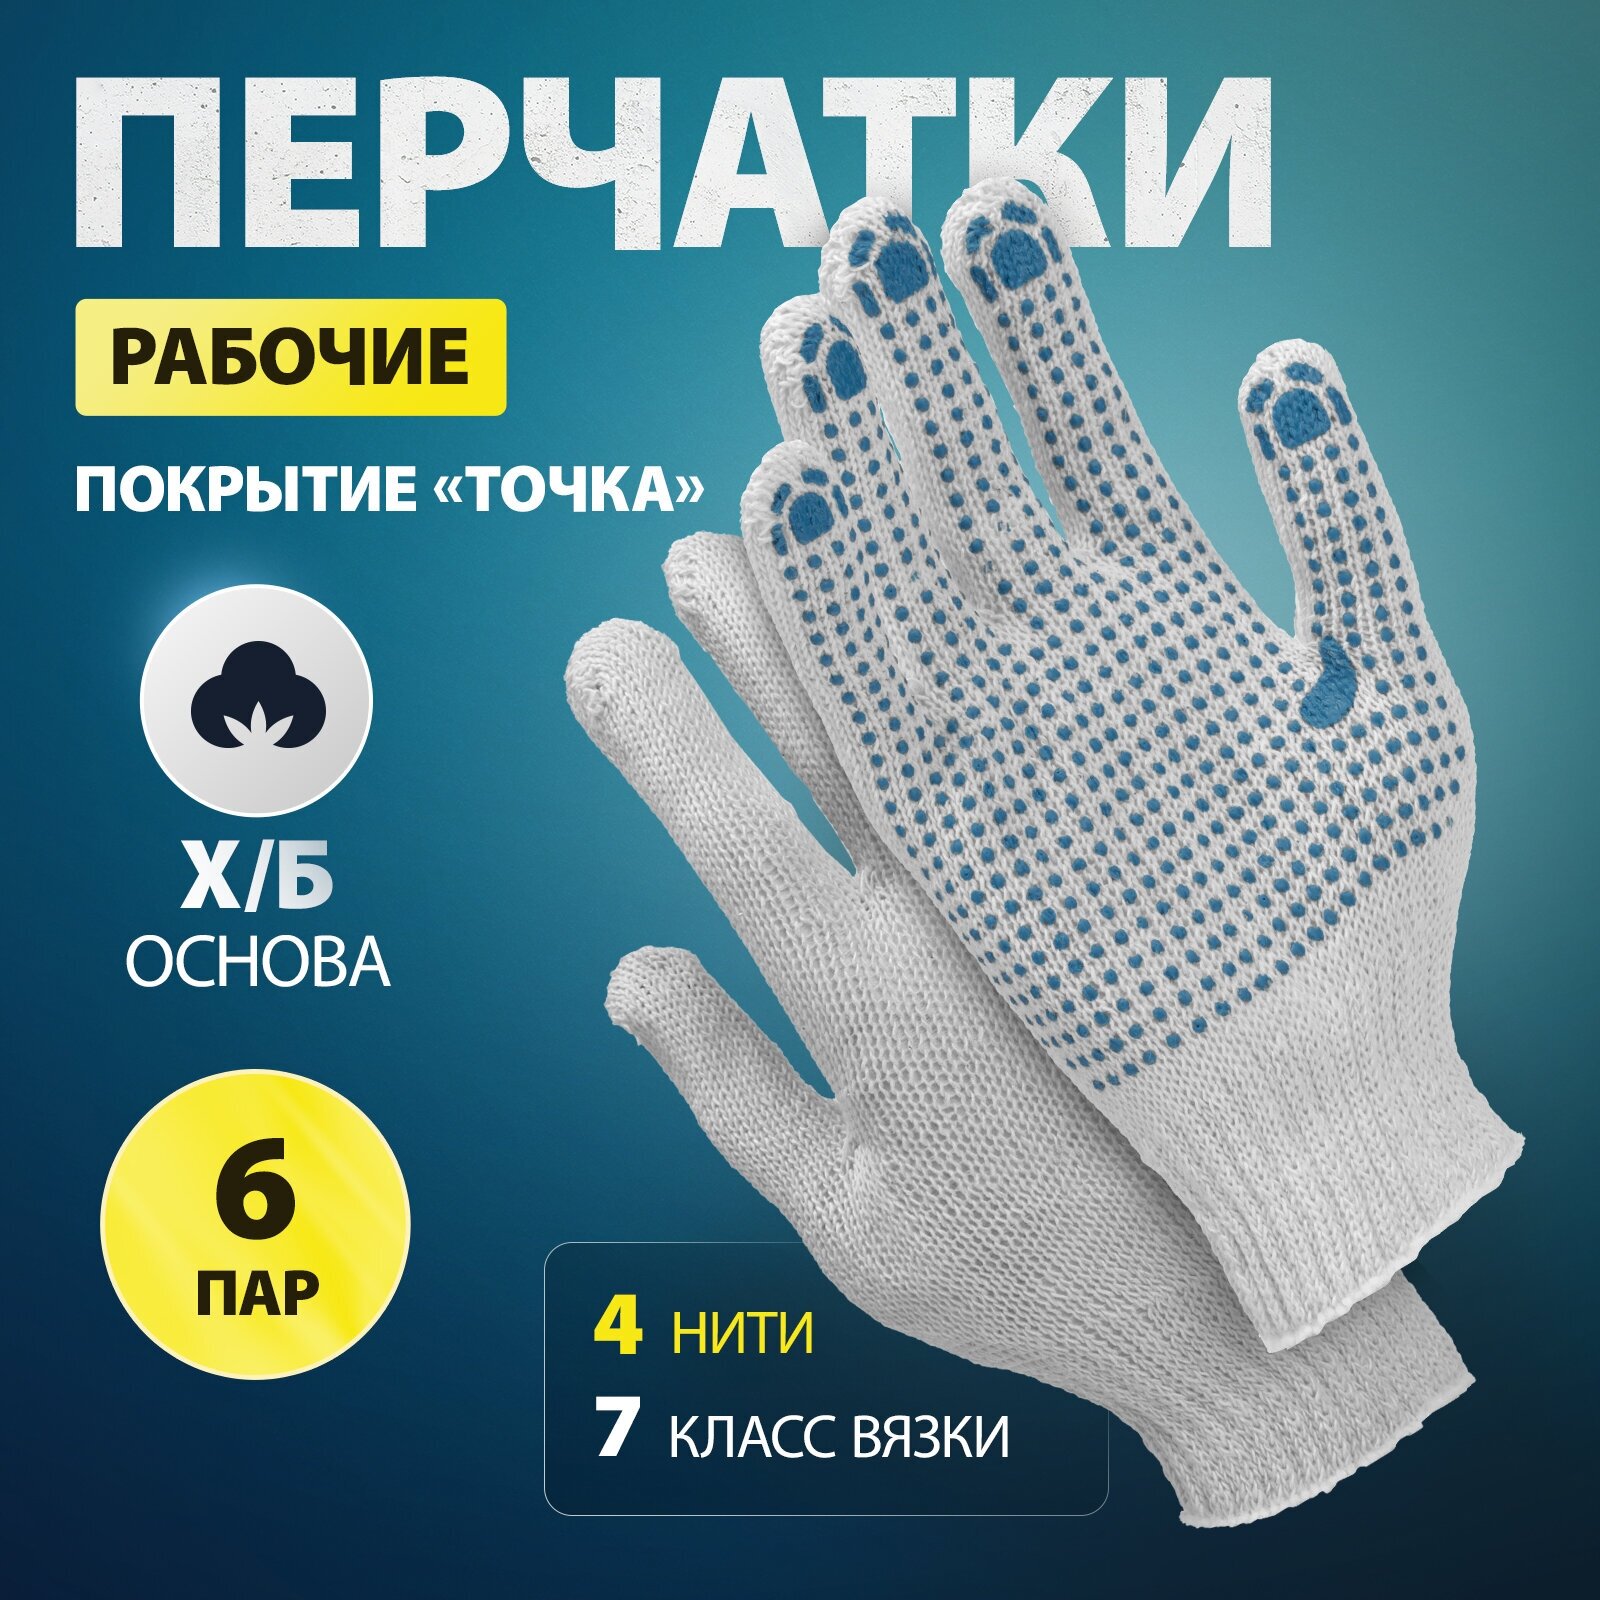 Набор перчаток х/б с ПВХ, 6 пар в упаковке Леруа Мерлен - фото №2